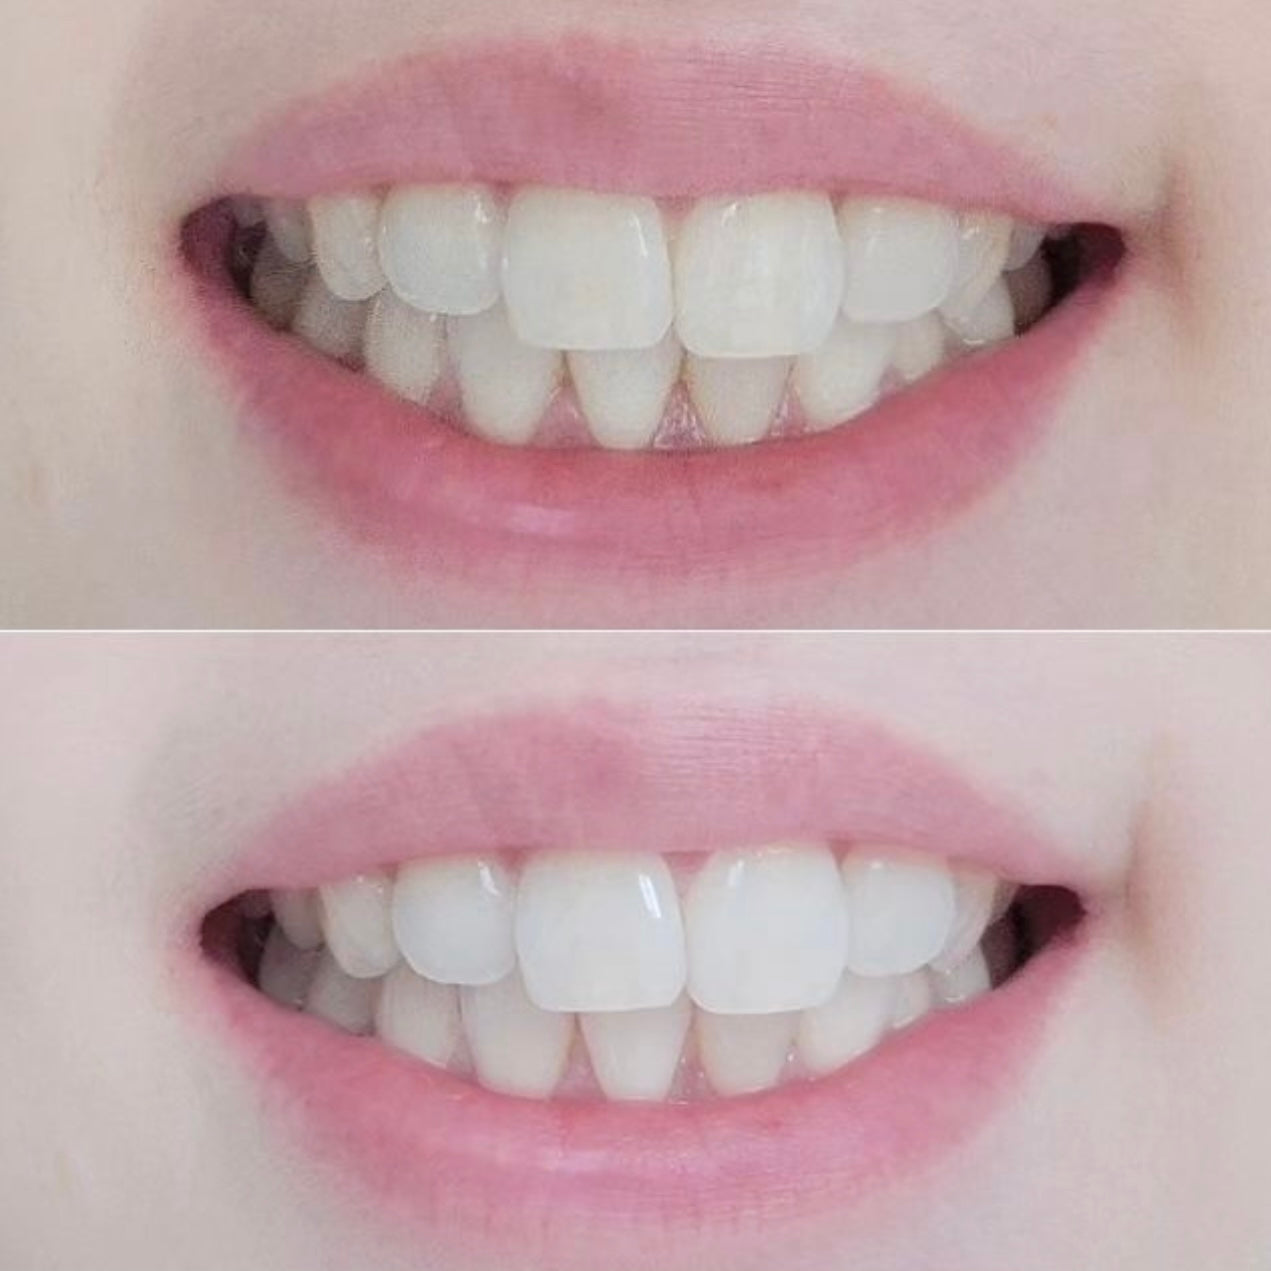 牙齒美白劑 ✨| Vussen 28 專業牙科強效美白牙膏 🦷| Vussen HP28 Extra Whitening Toothpaste🔥